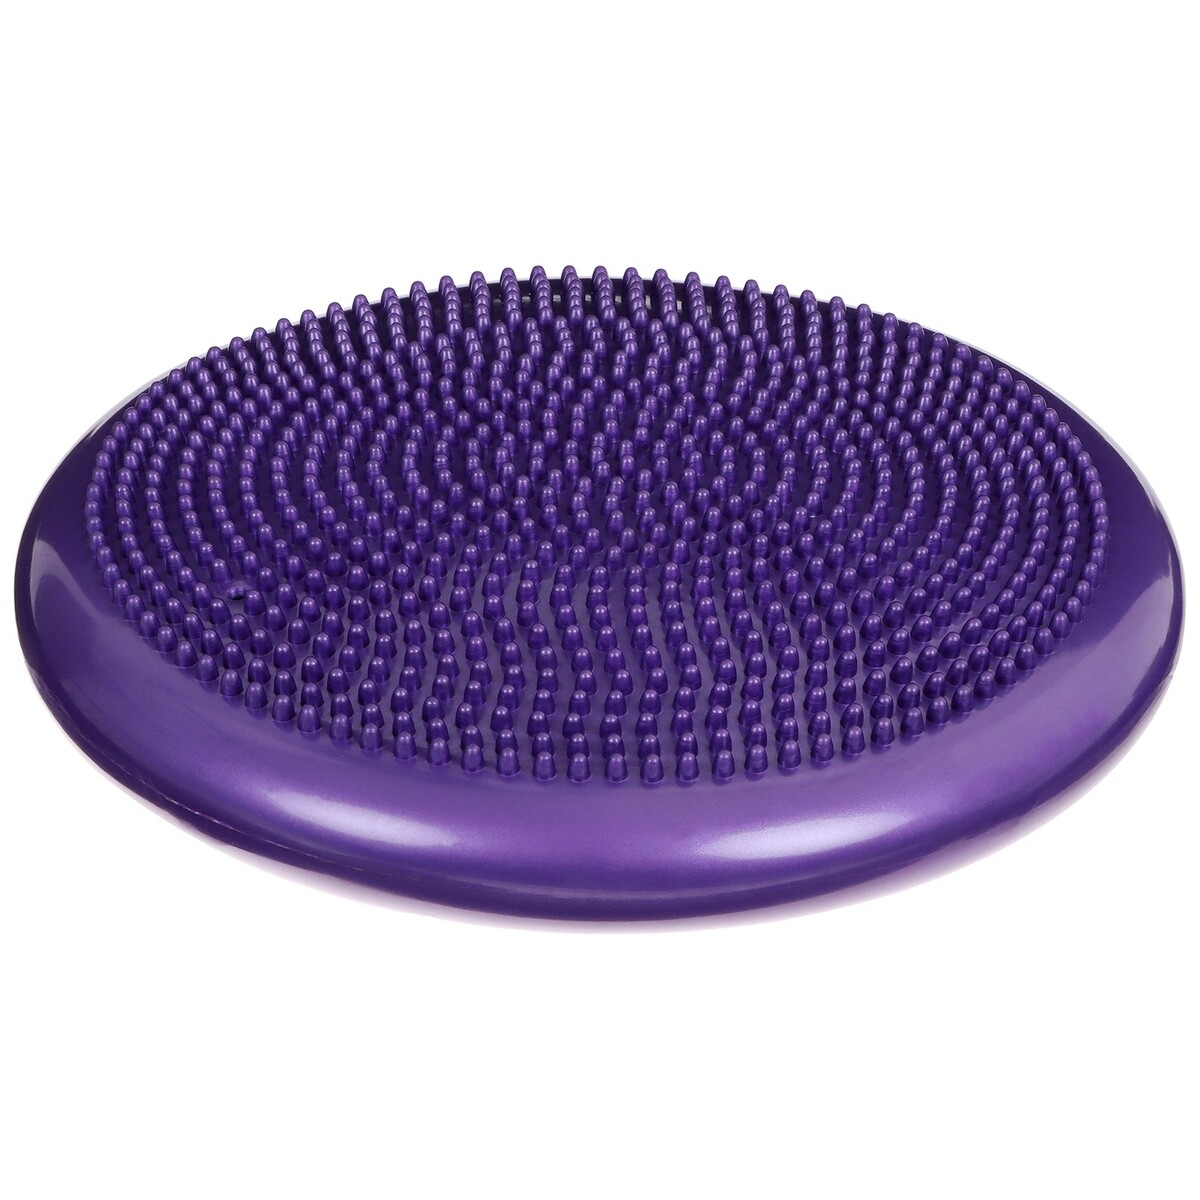 Подушка балансировочная onlytop, массажная, d=35 см, цвет фиолетовый балансировочная дорожка xboard змейка